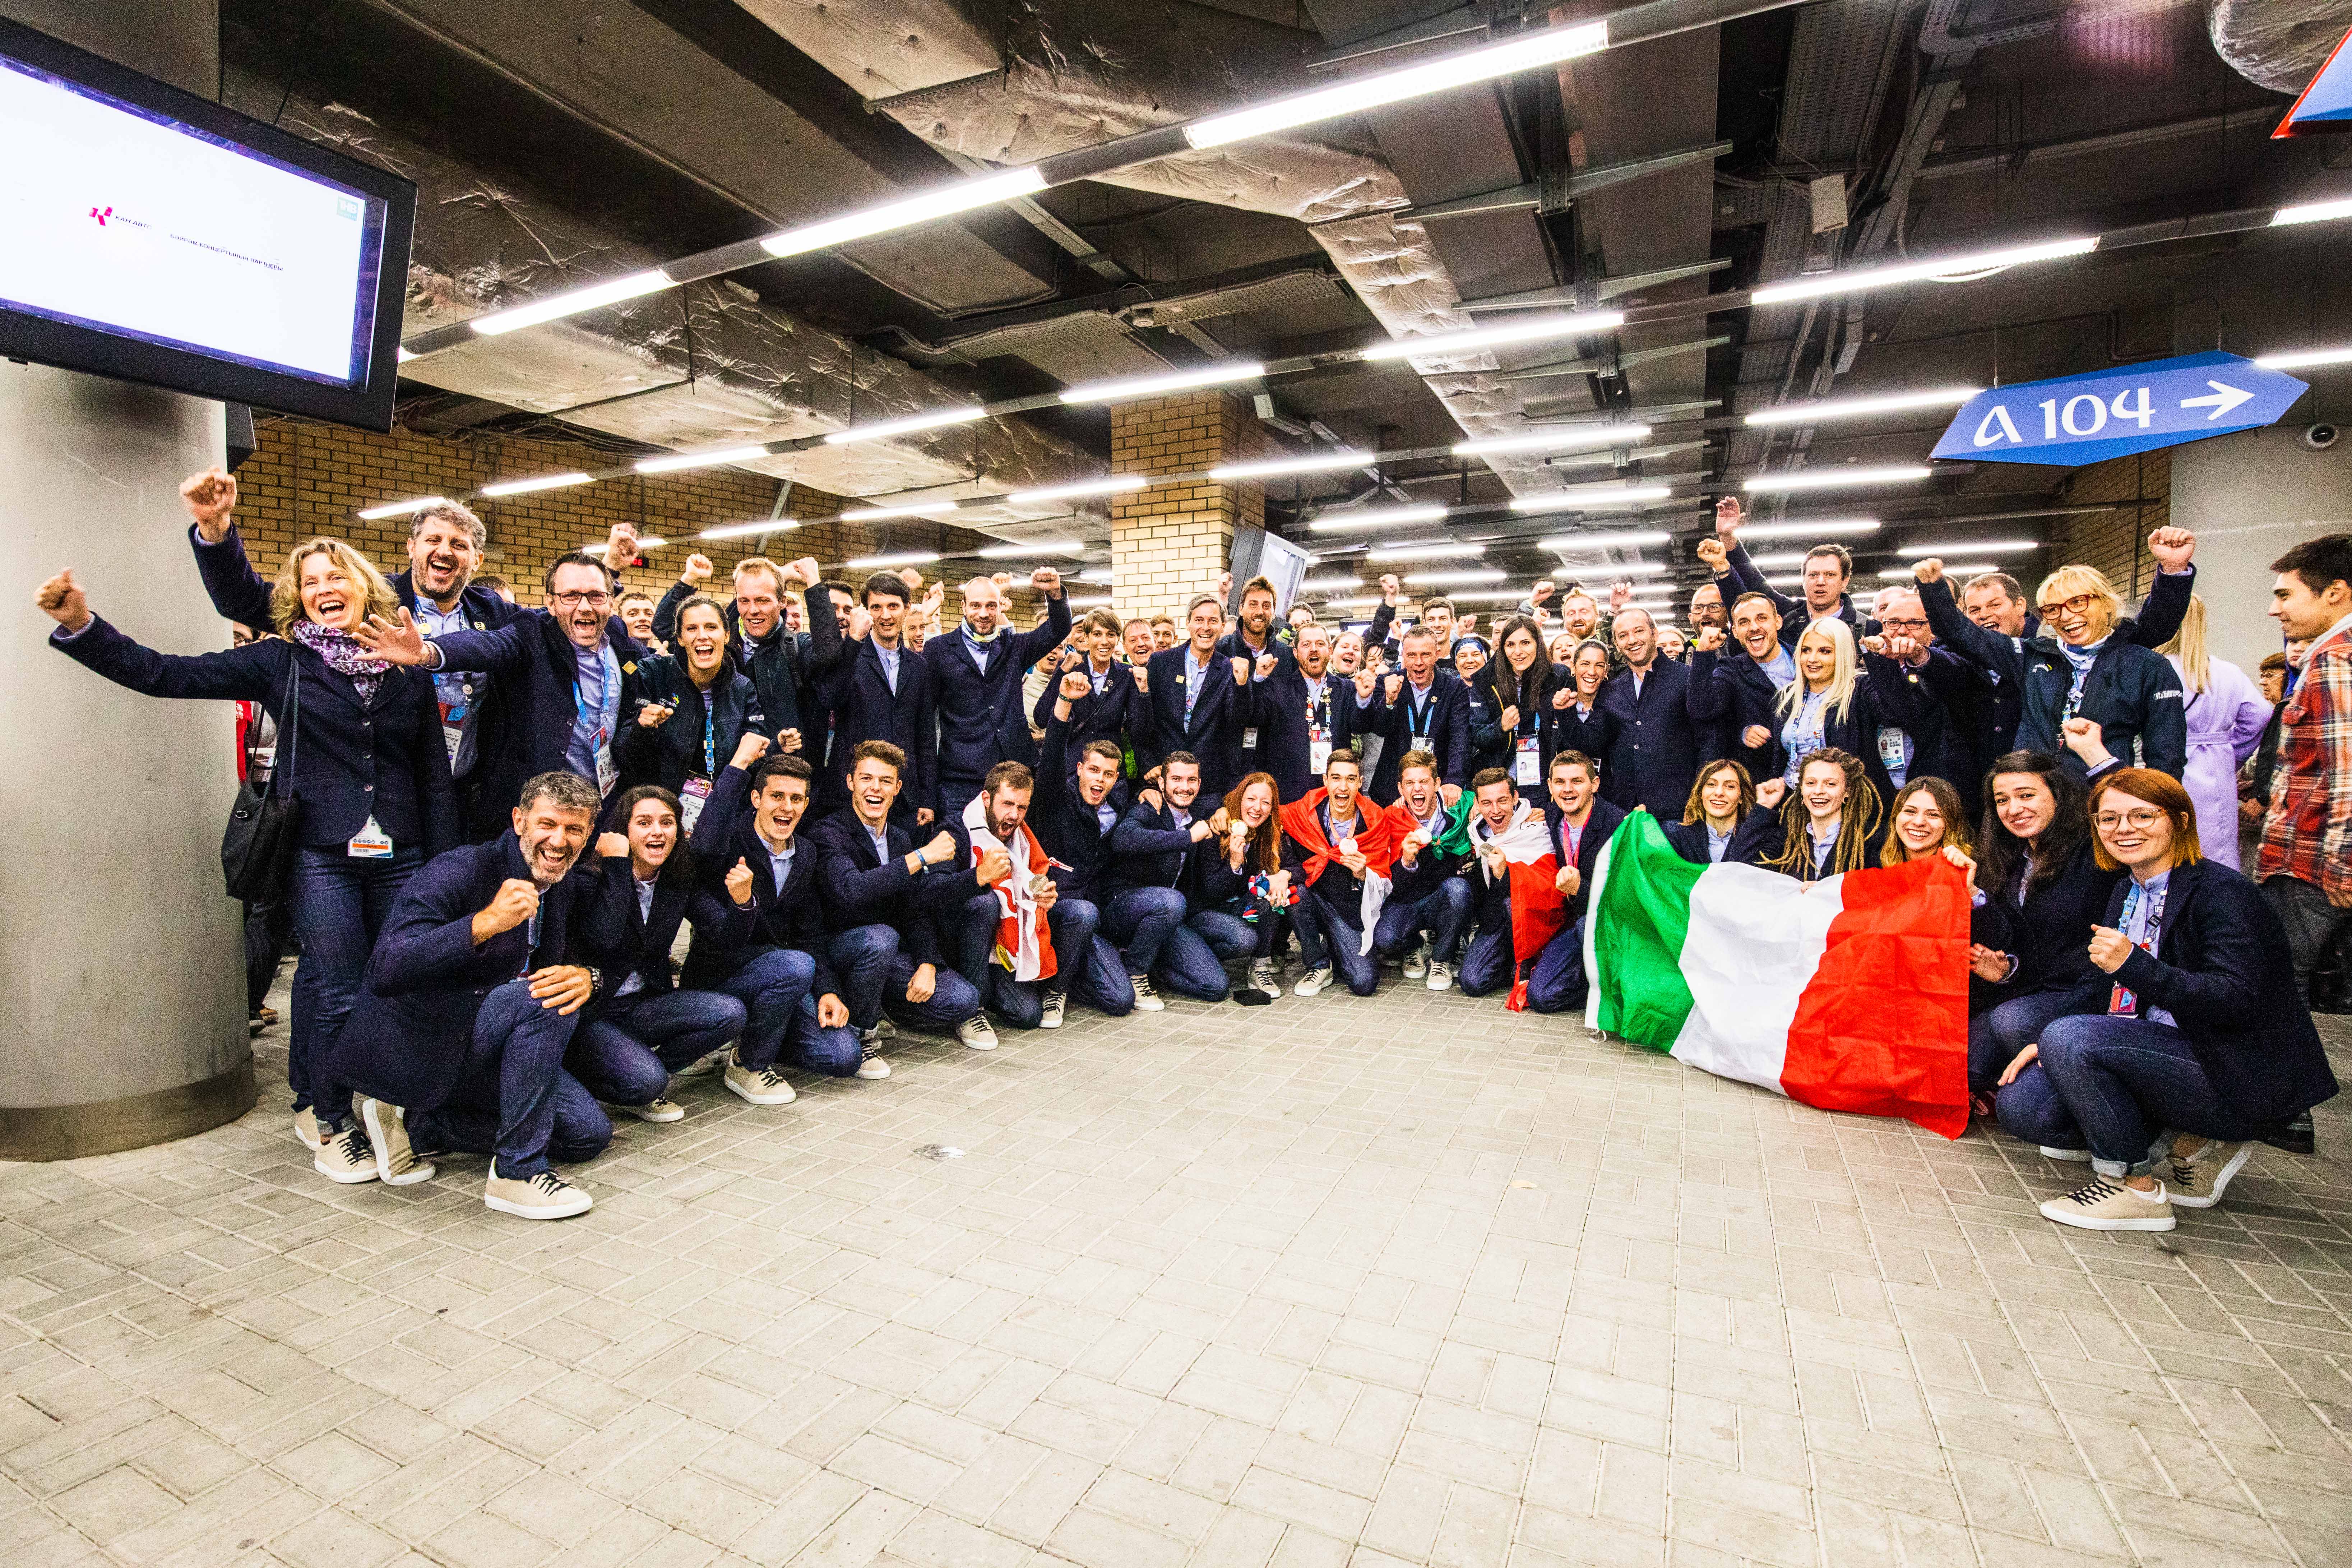 L'esultanza del Team Italy dopo la cerimonia finale (Foto: Alan Bianchi - AB Foto).